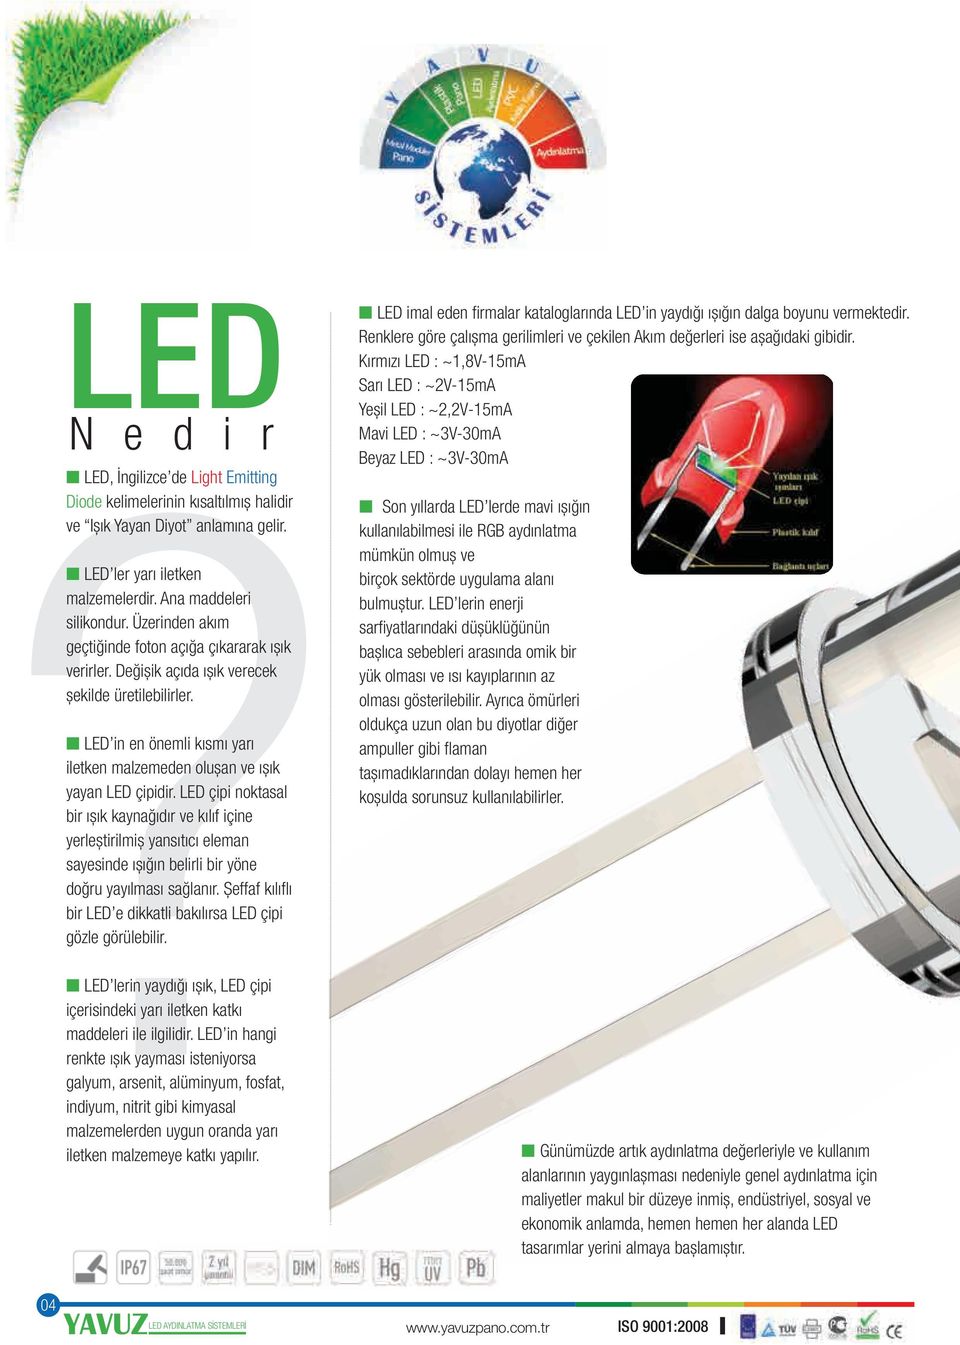 LED çipi noktasal bir ıșık kaynağıdır ve kılıf içine yerleștirilmiș yansıtıcı eleman sayesinde ıșığın belirli bir yöne doğru yayılması sağlanır.